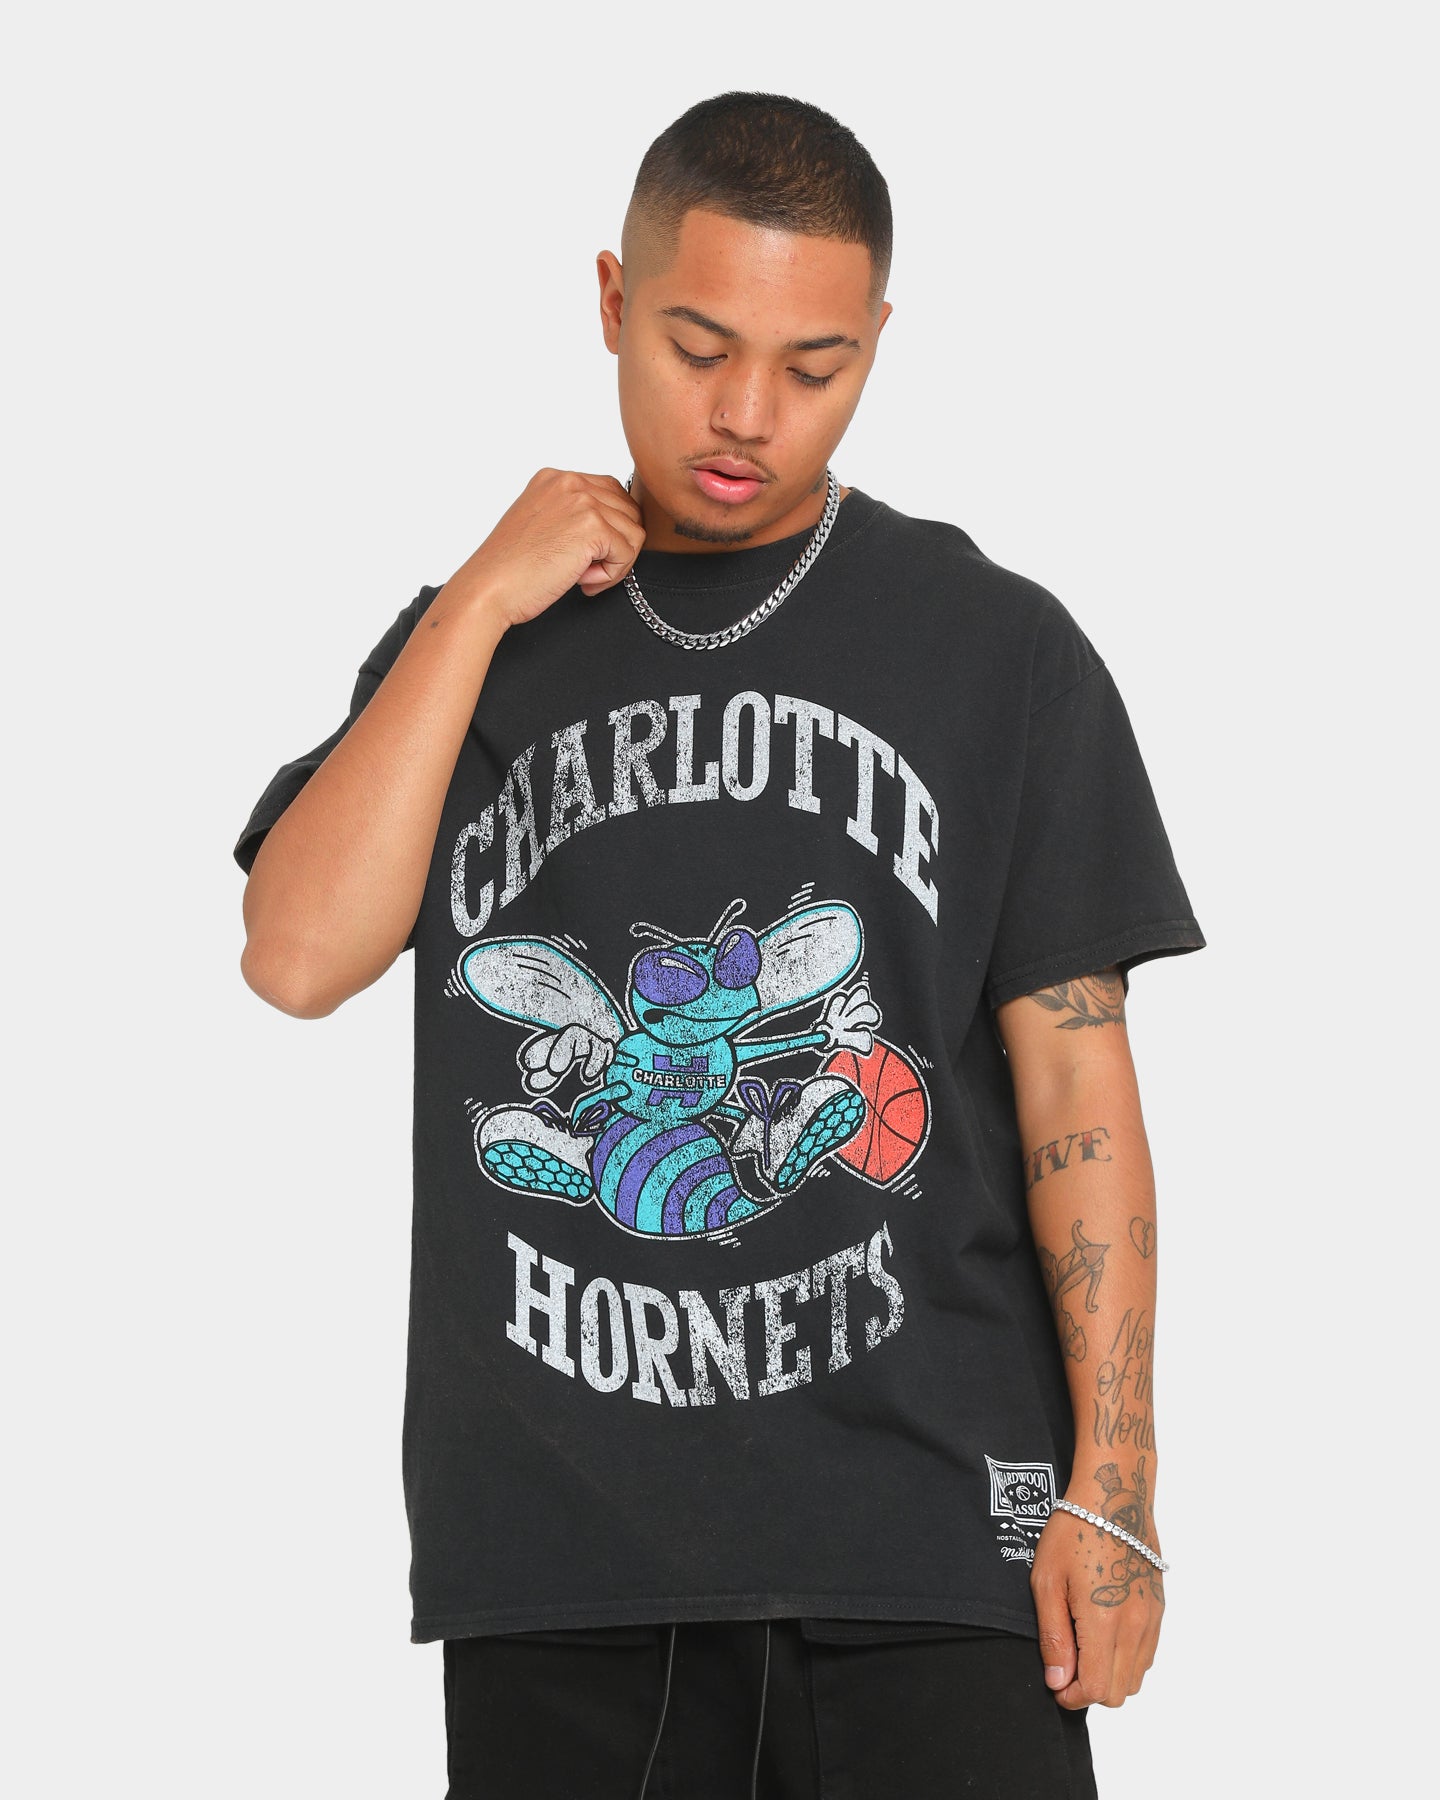 charlotte hornets merchandise